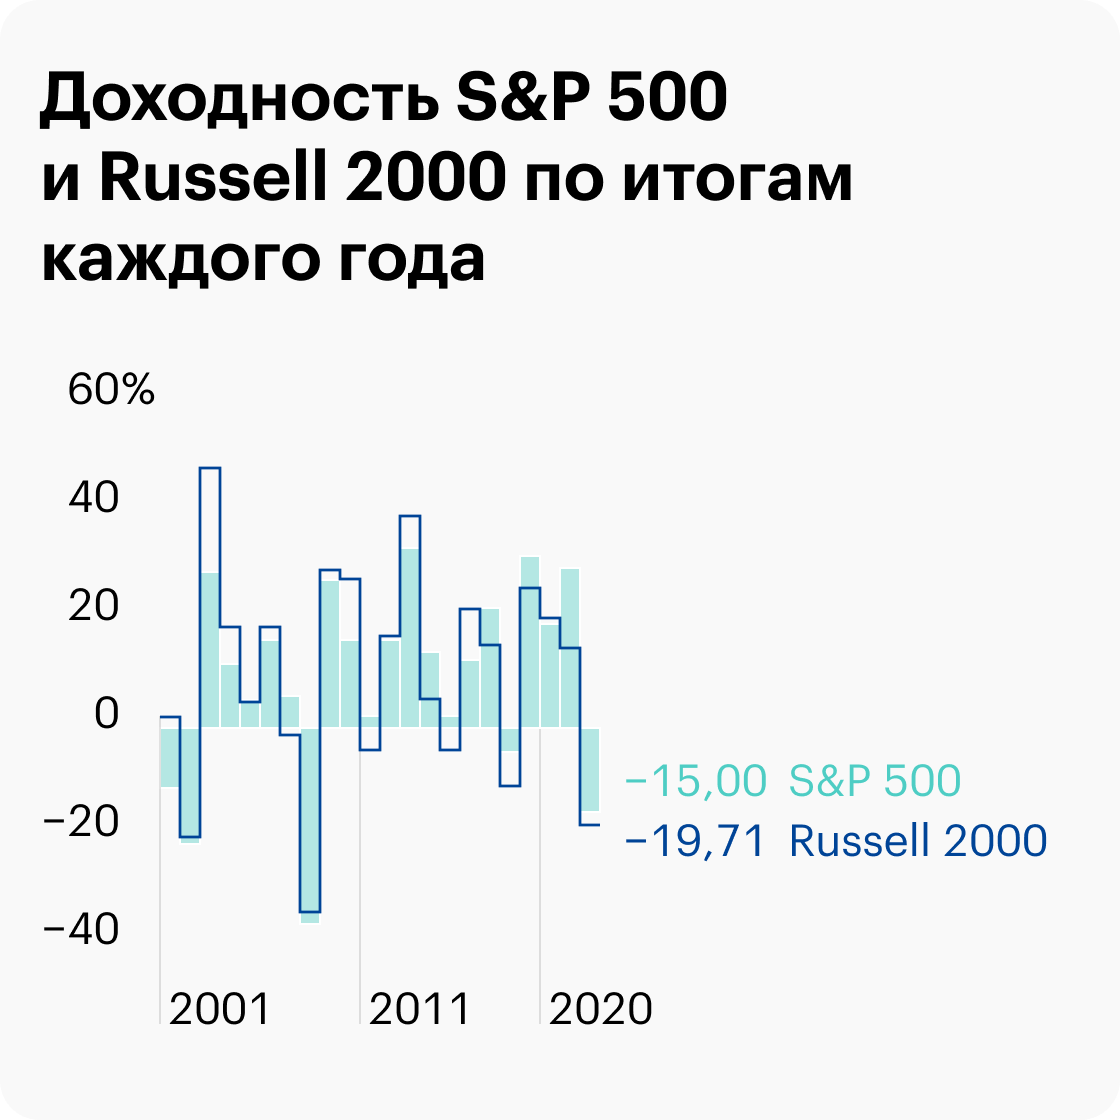 В 2007, 2011&nbsp;и 2015&nbsp;годах Russell&nbsp;2000 заканчивал год в минус, в то время как S&P;&nbsp;500 оставался в плюсе. Хотя были и годы, когда S&P;&nbsp;500 давал результаты хуже, — 2001, 2002, 2008. Источник: portfoliovisualizer.com